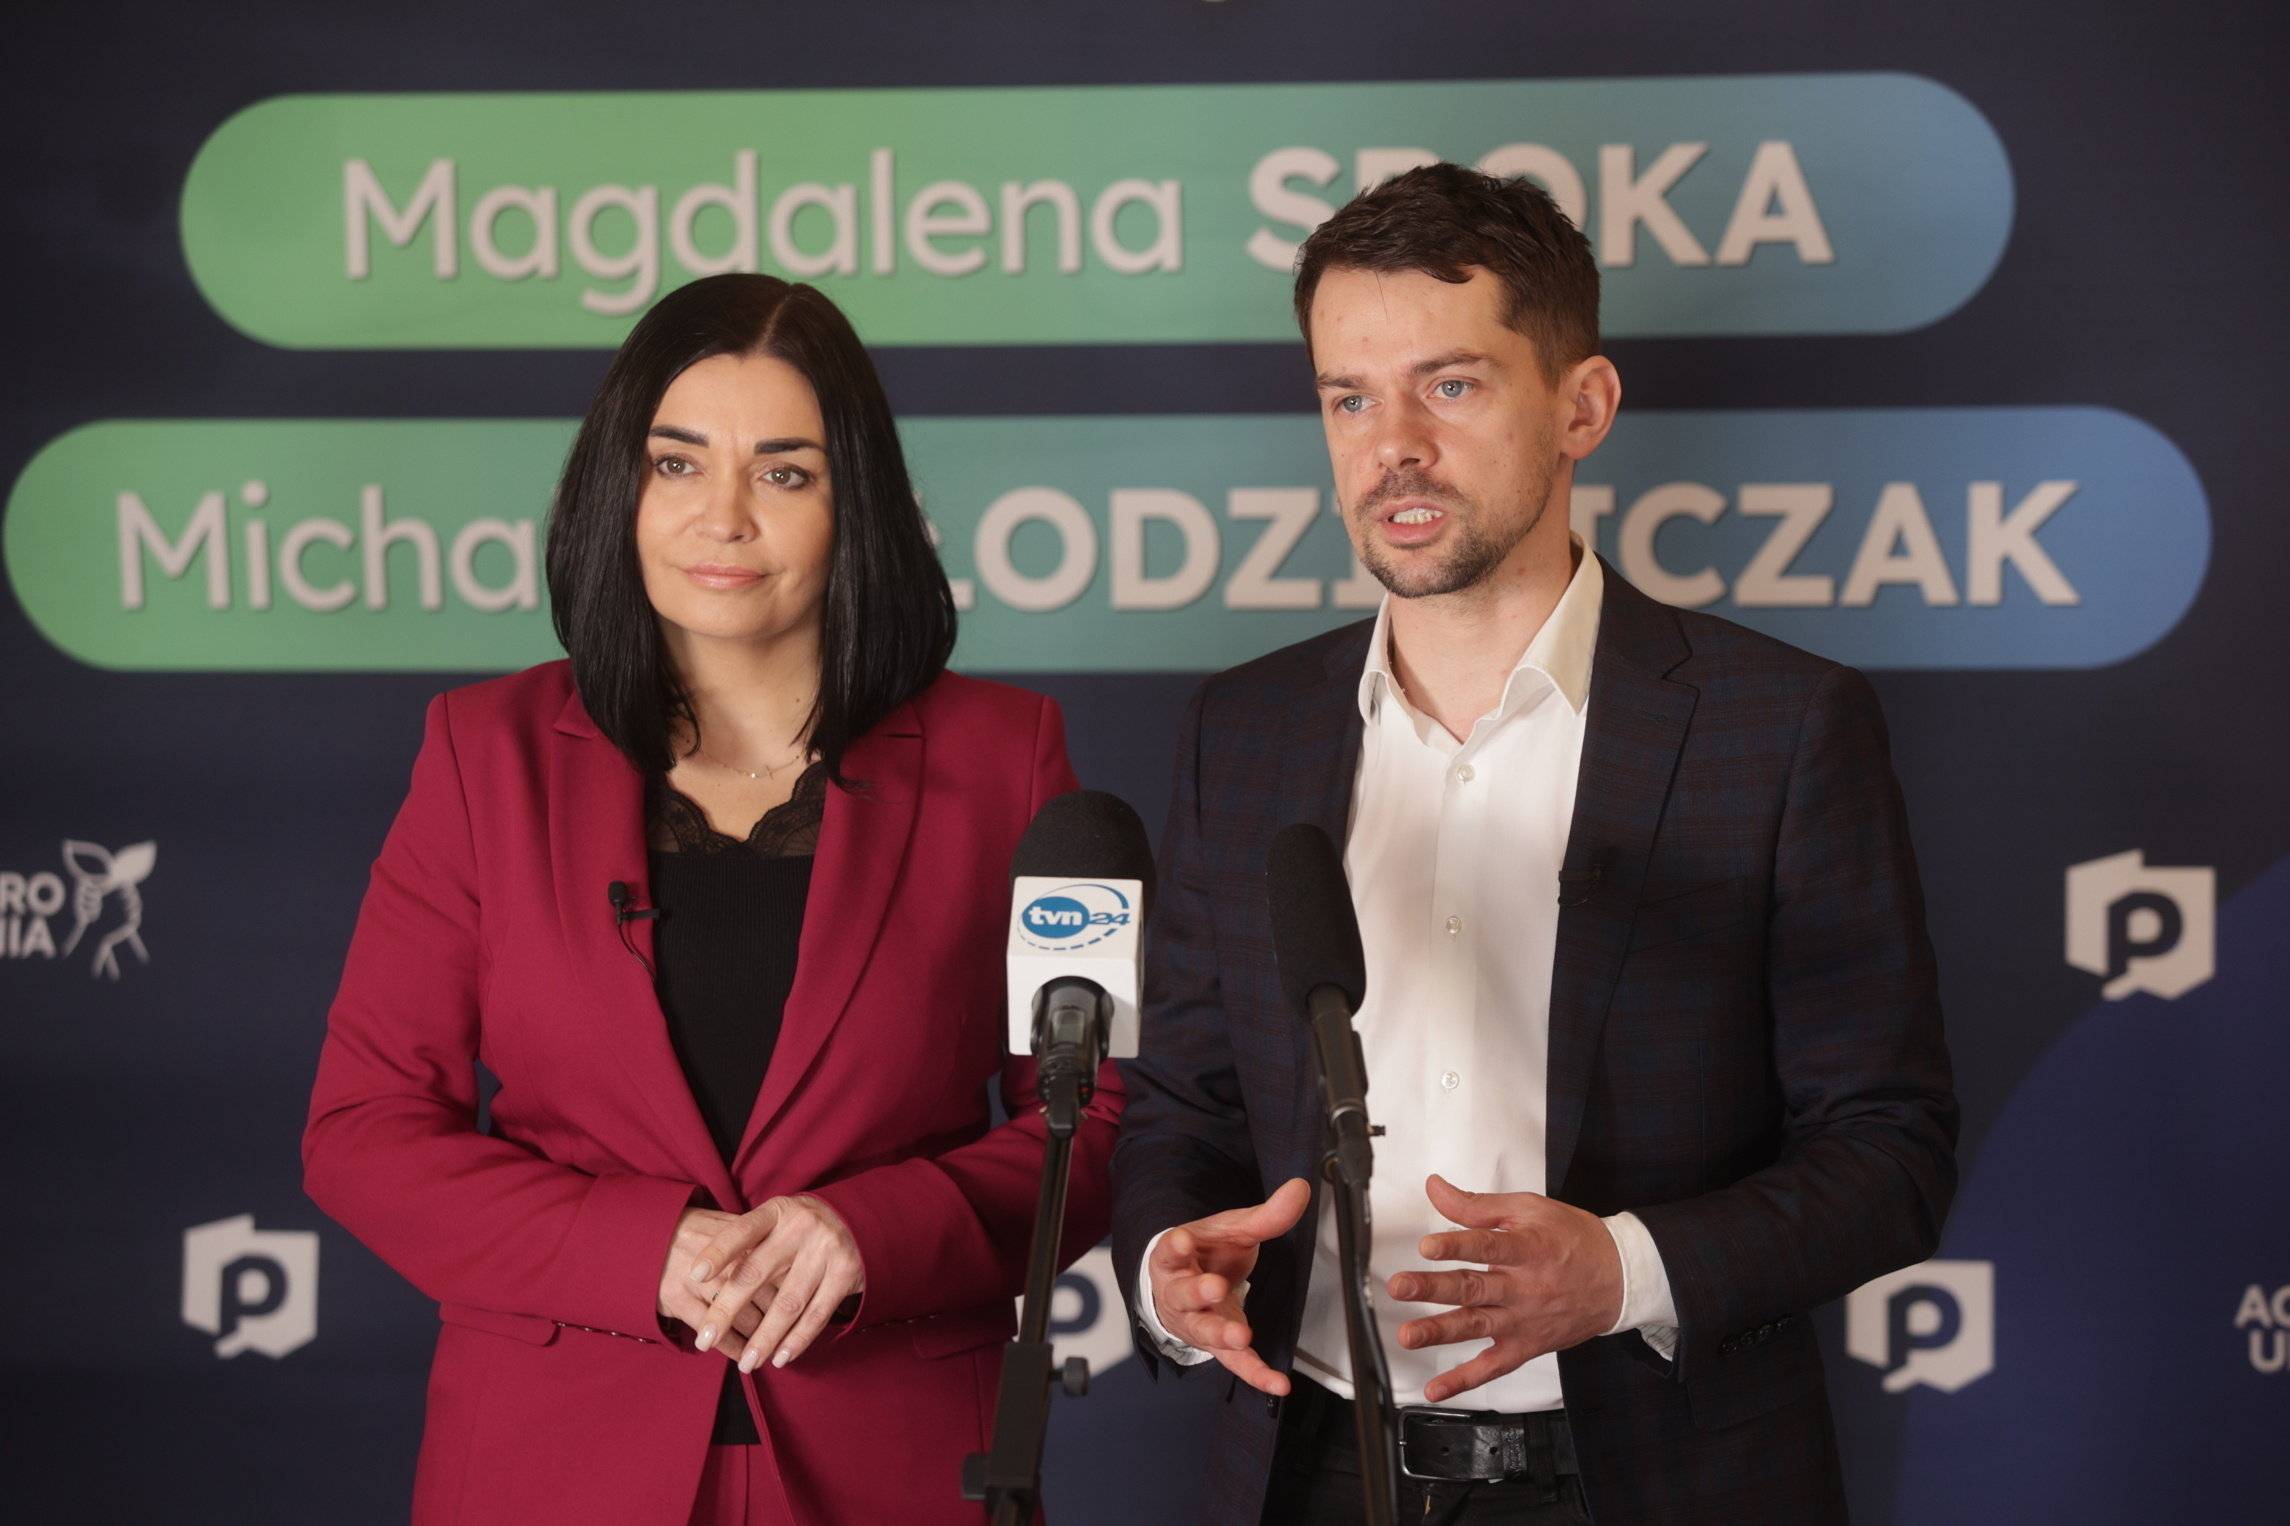 Na zdjęciu Prezes Porozumienia Magdalena Sroka (l) i lider Agrounii Michal Kolodziejczak (p) podczas otwartego spotkania .